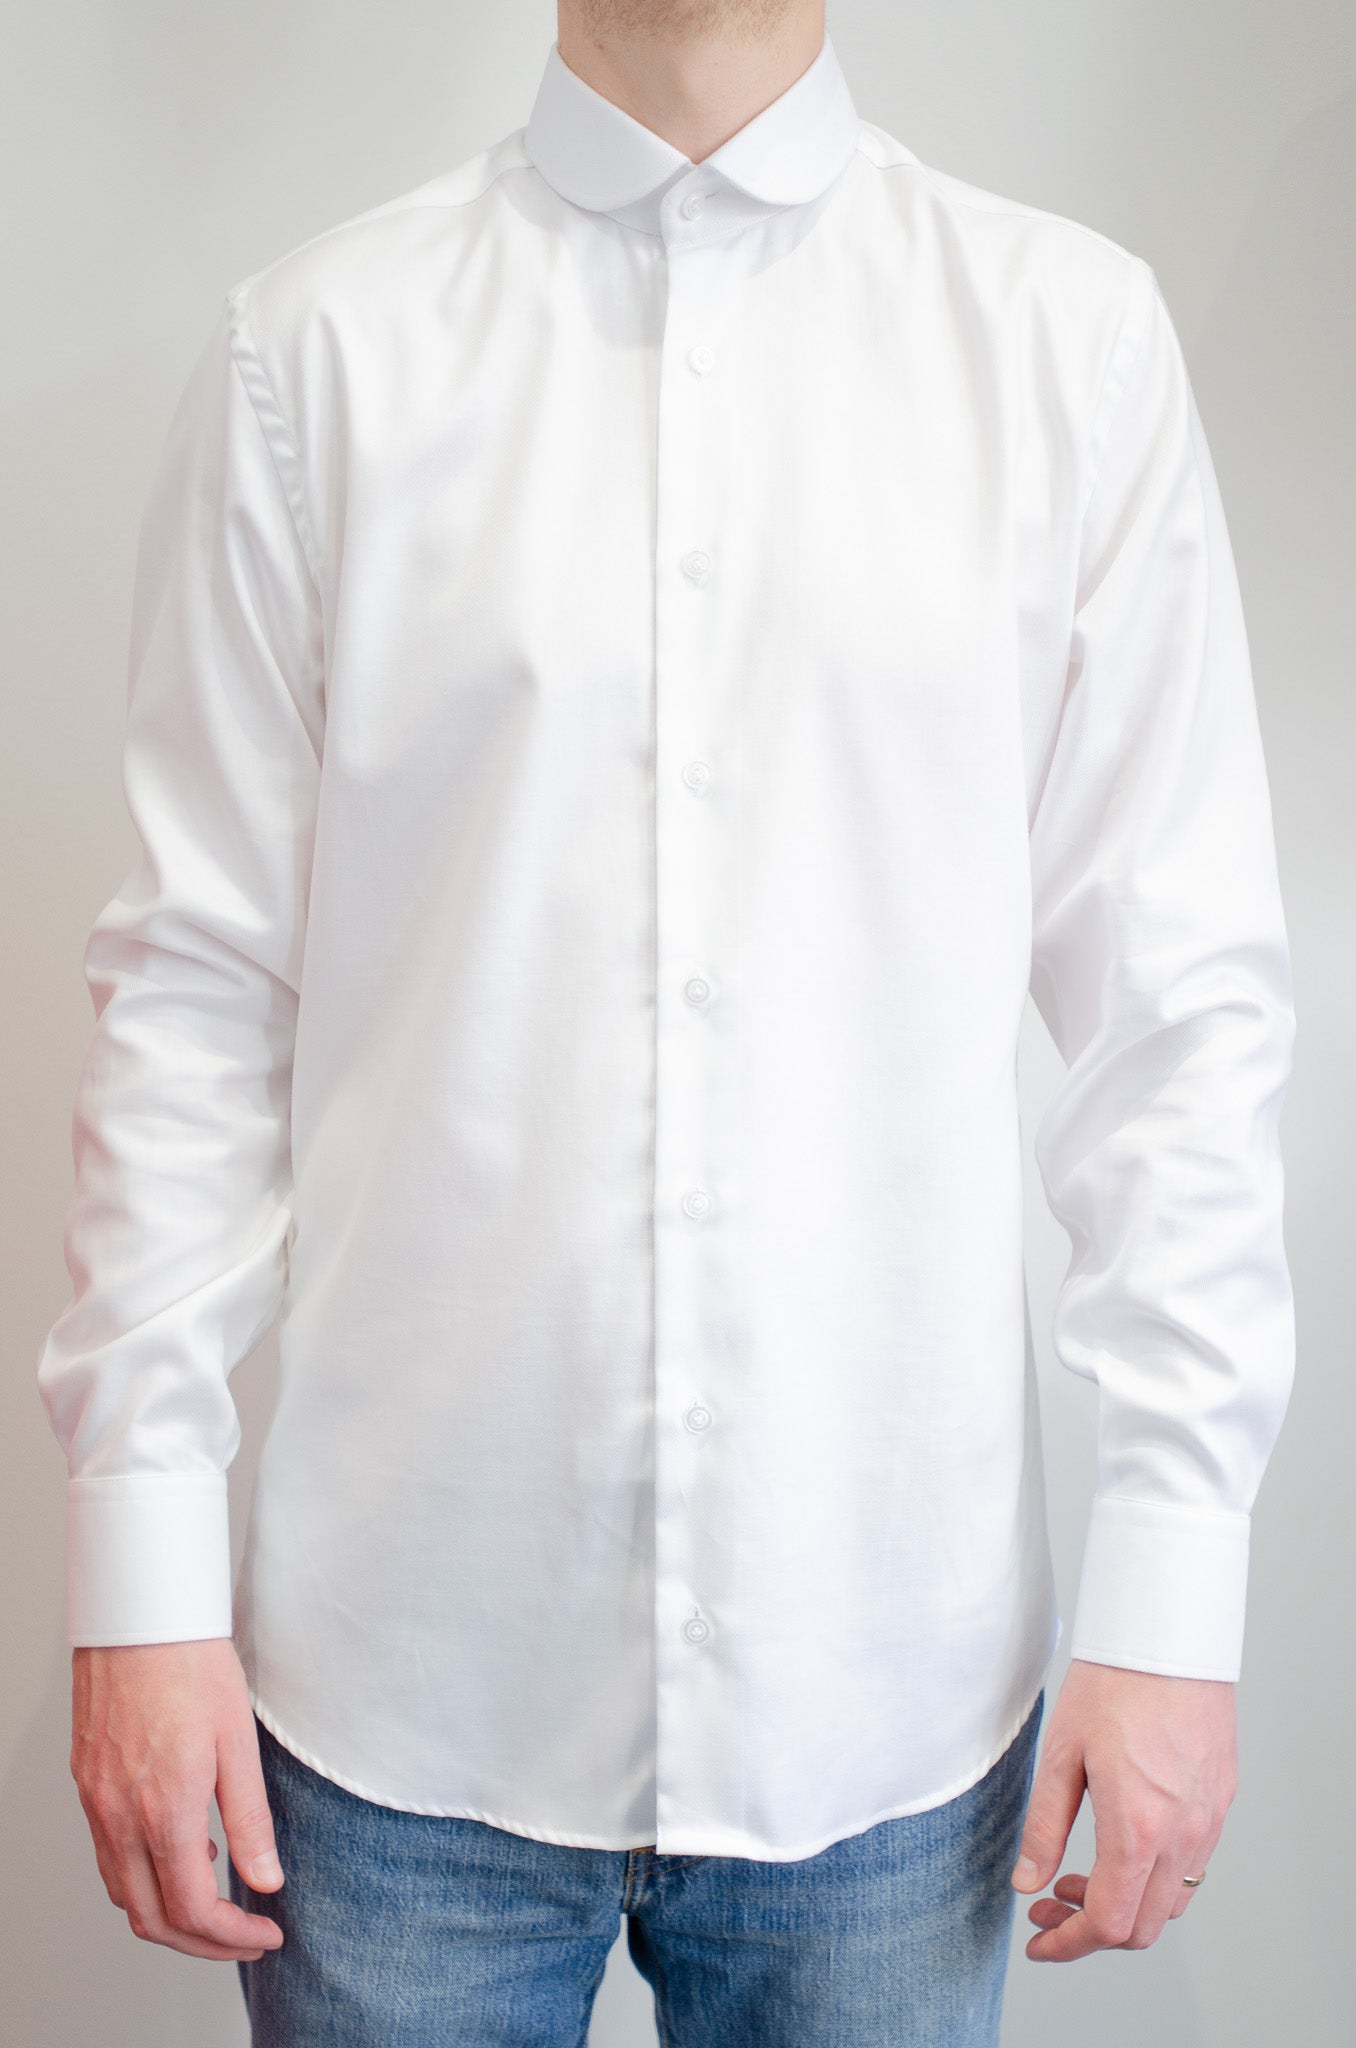 Club collar shirt - White